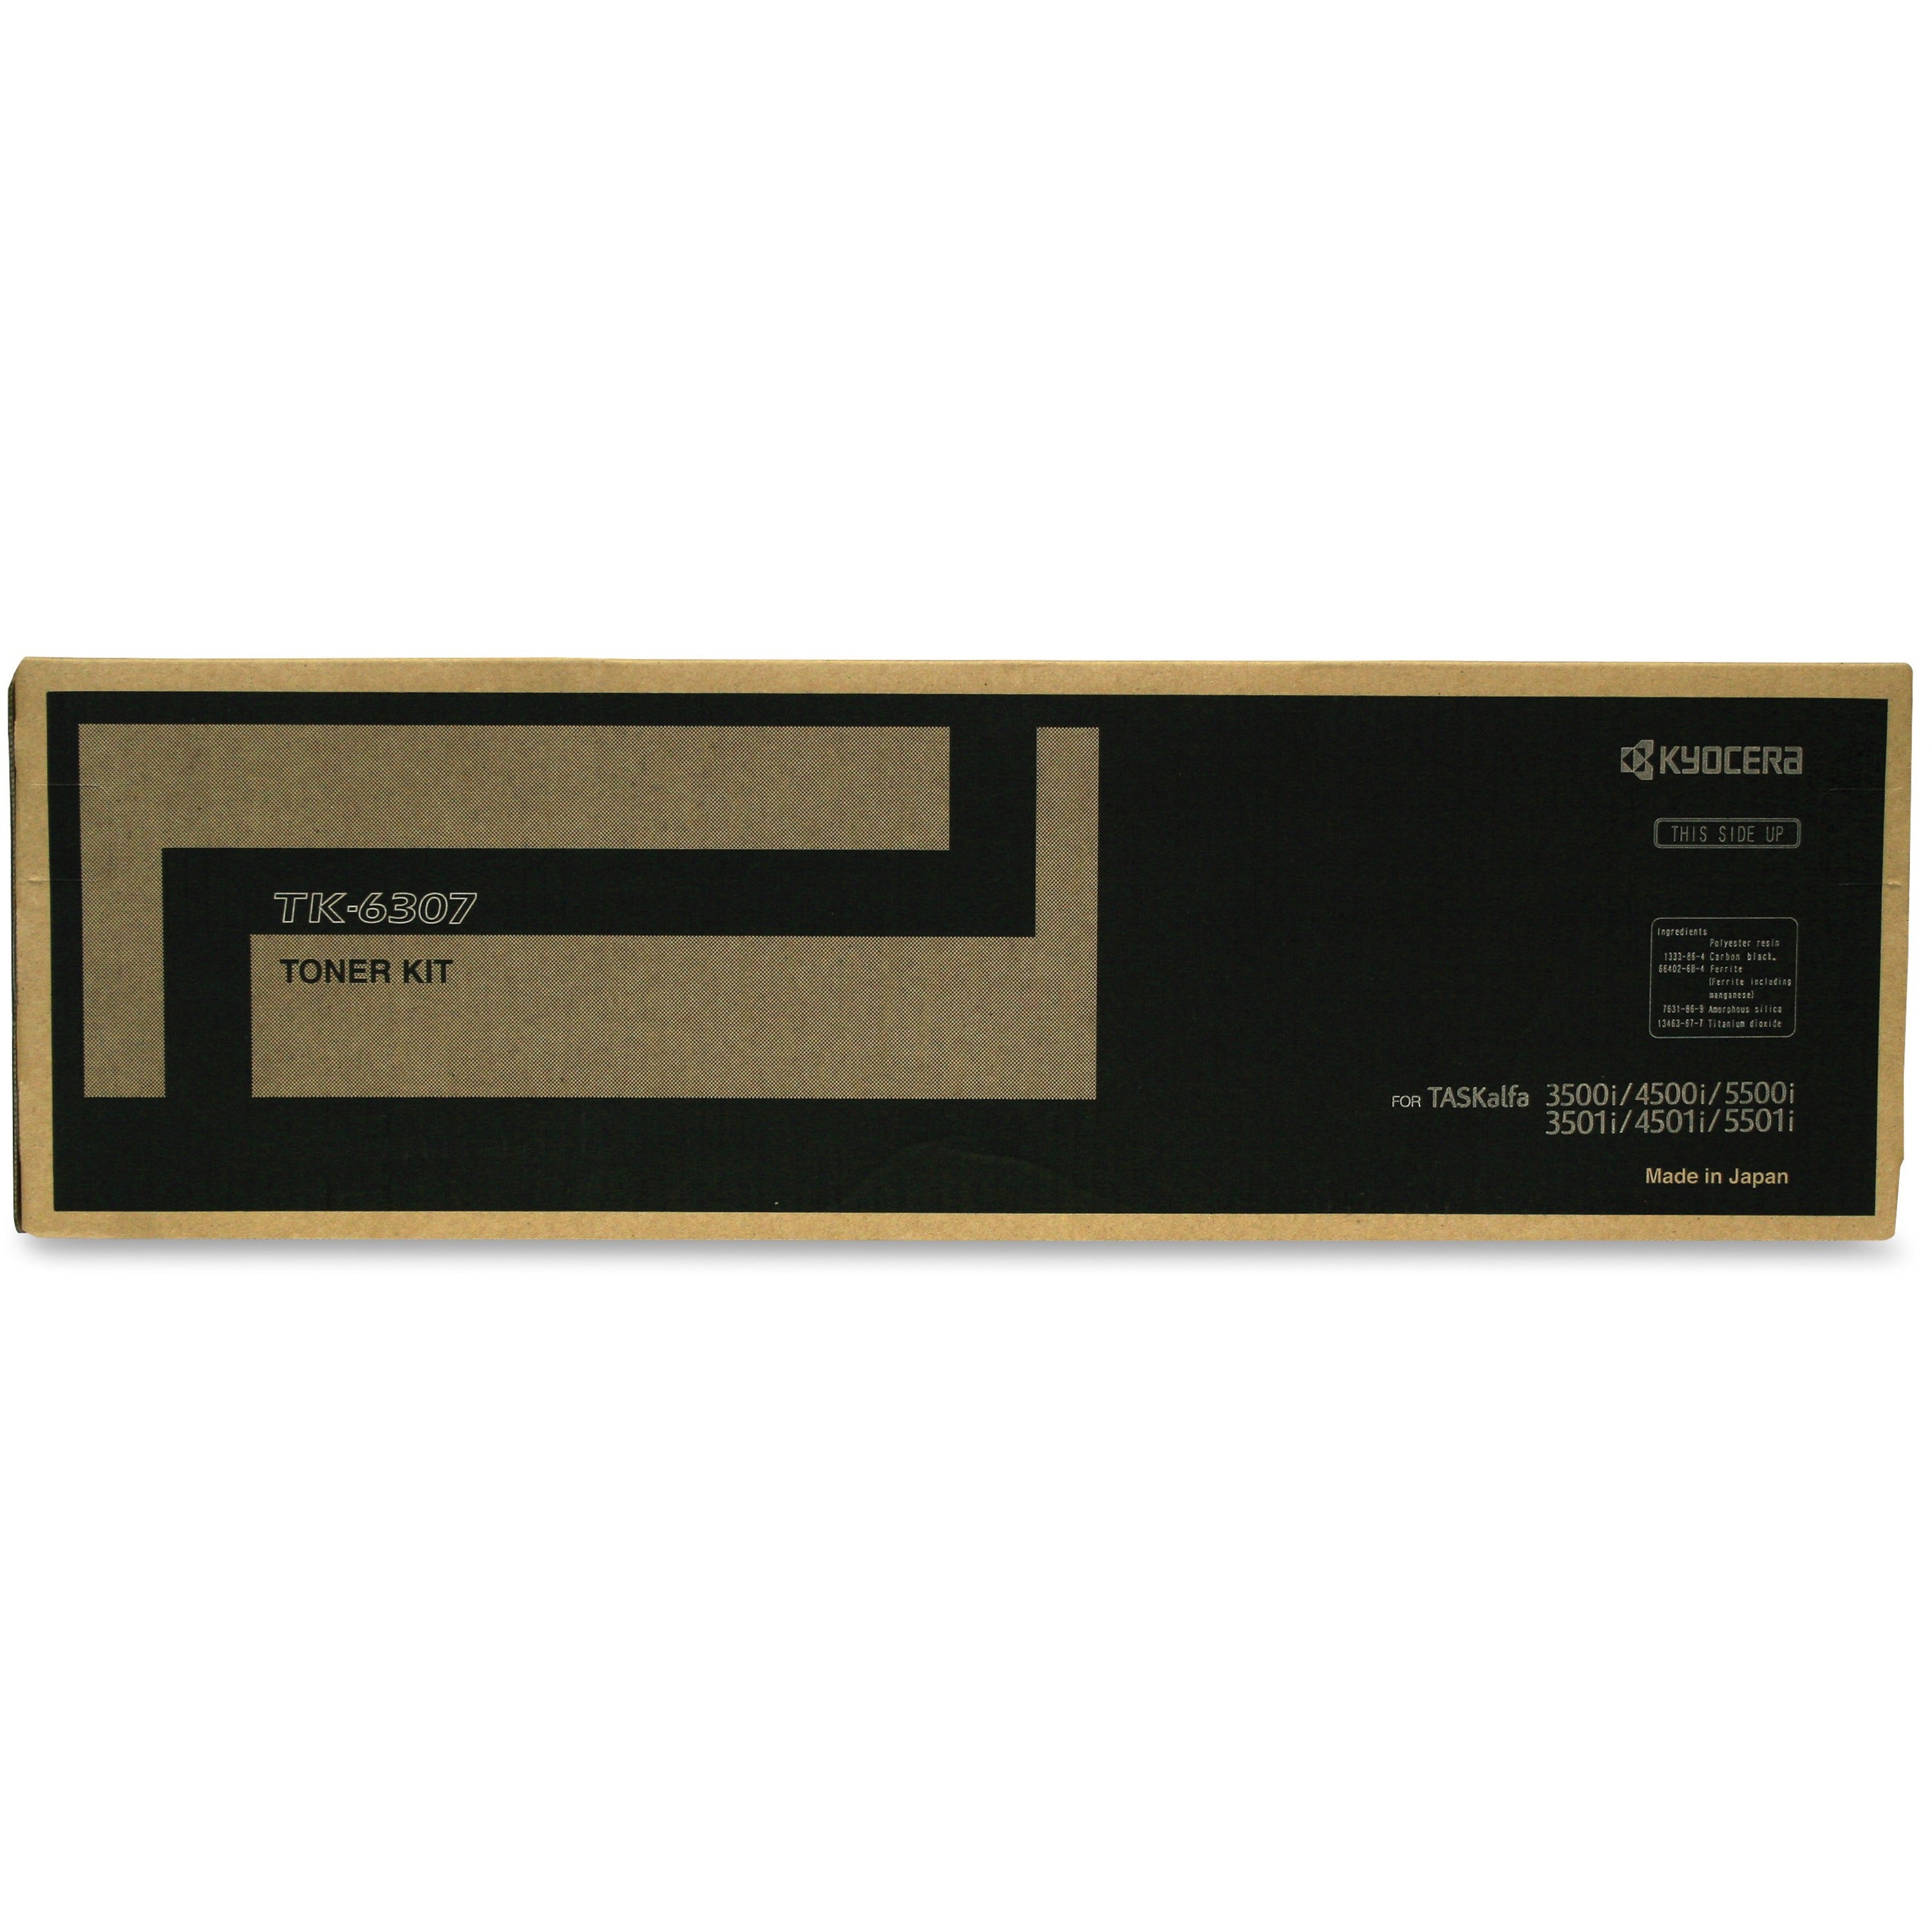 Kyocera Original Toner Cartridge - Laser - 35000 Pages - Black - 1 Each - 